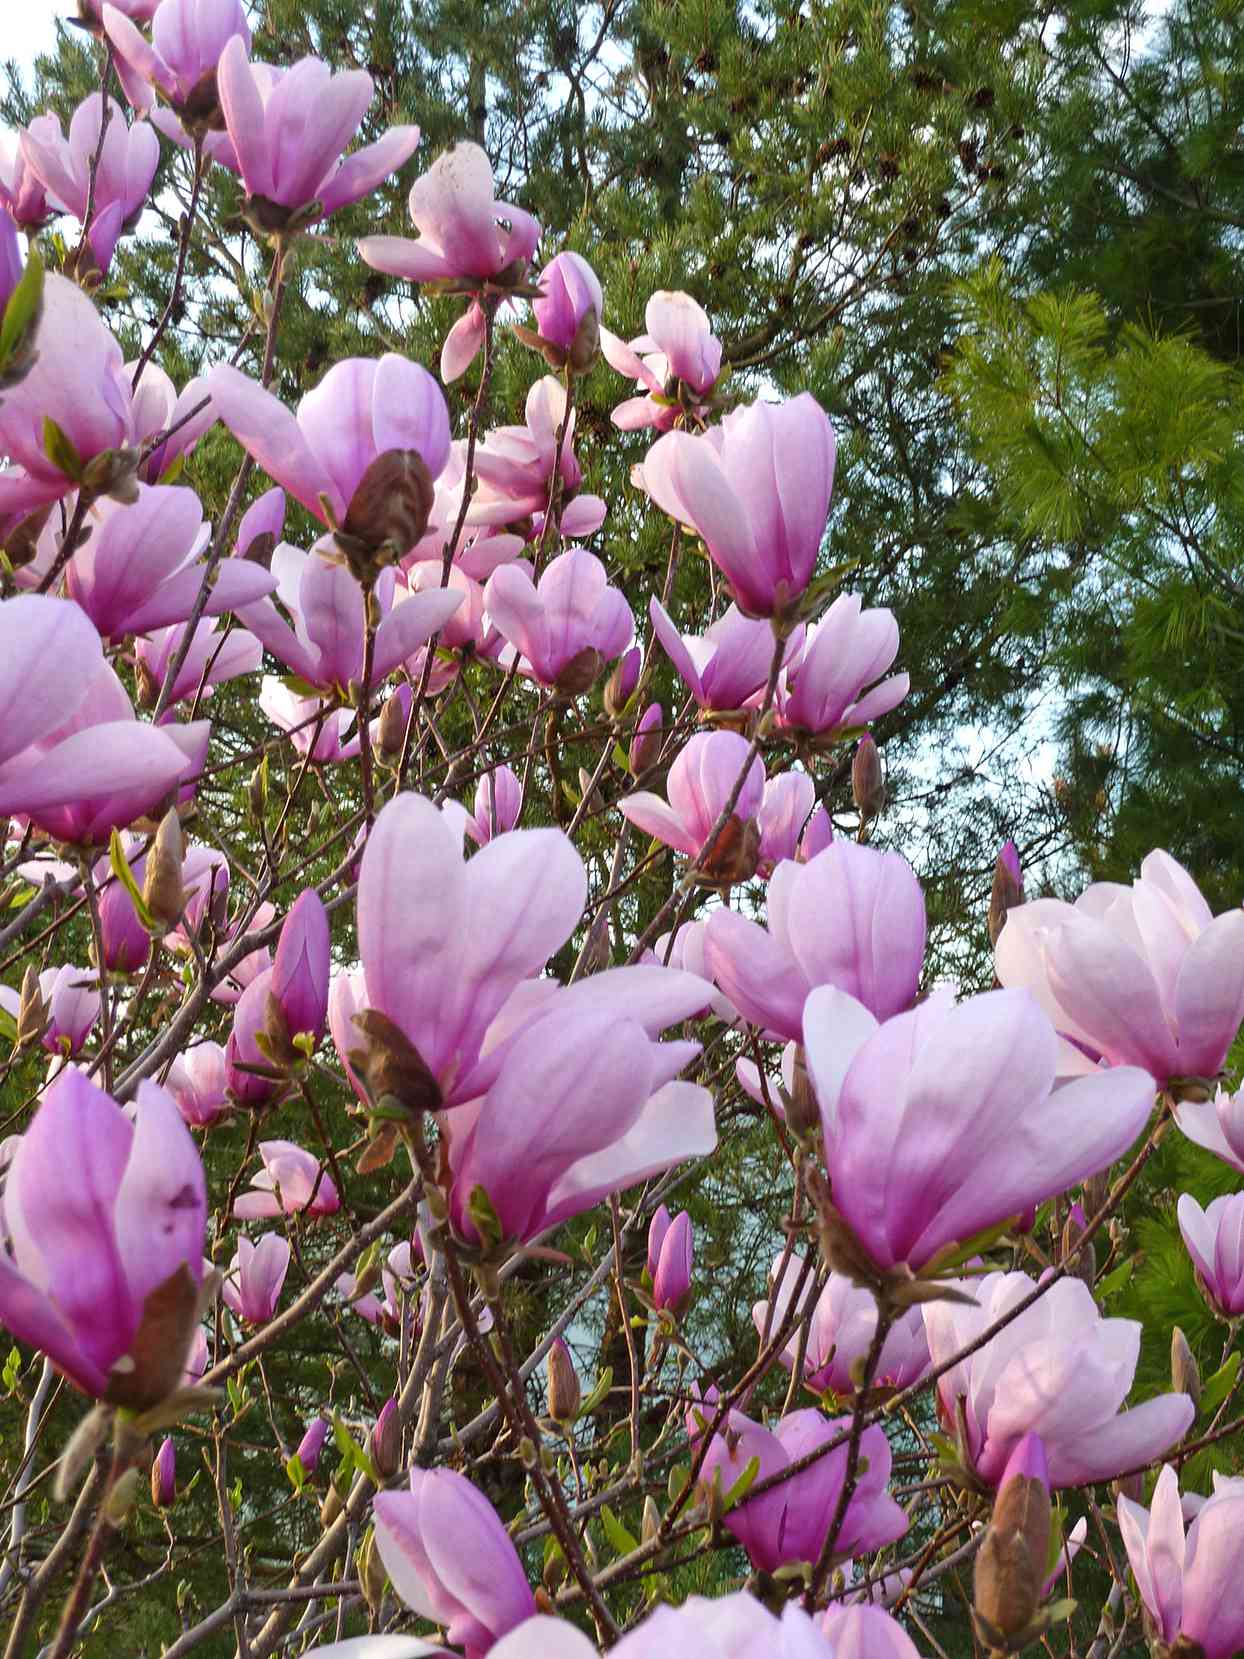 Magnolia Jane purple-pink flowers on tree